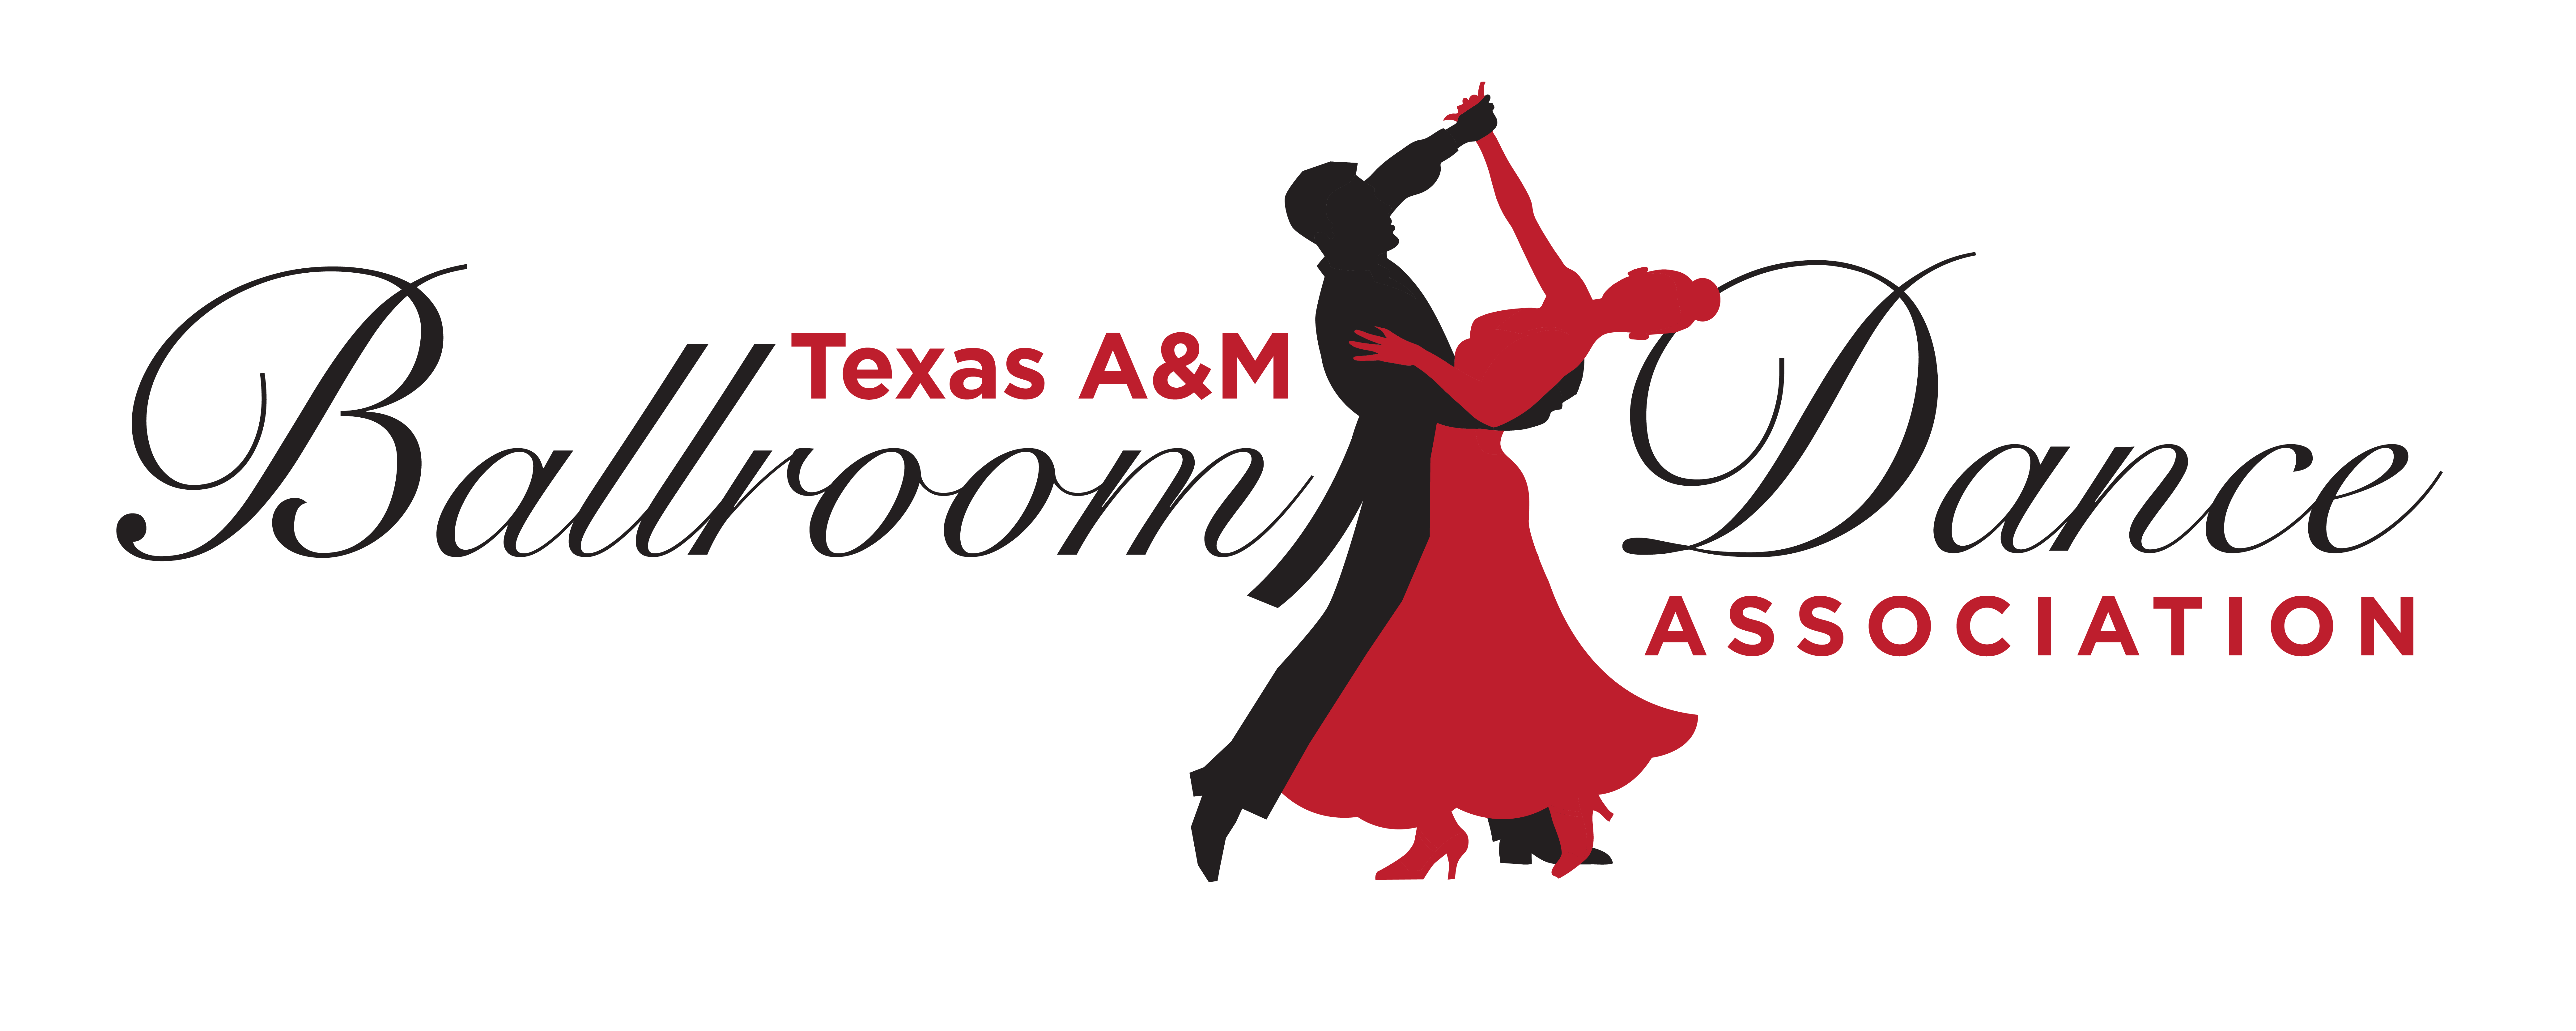 Texas A&M Ballroom Dance Association